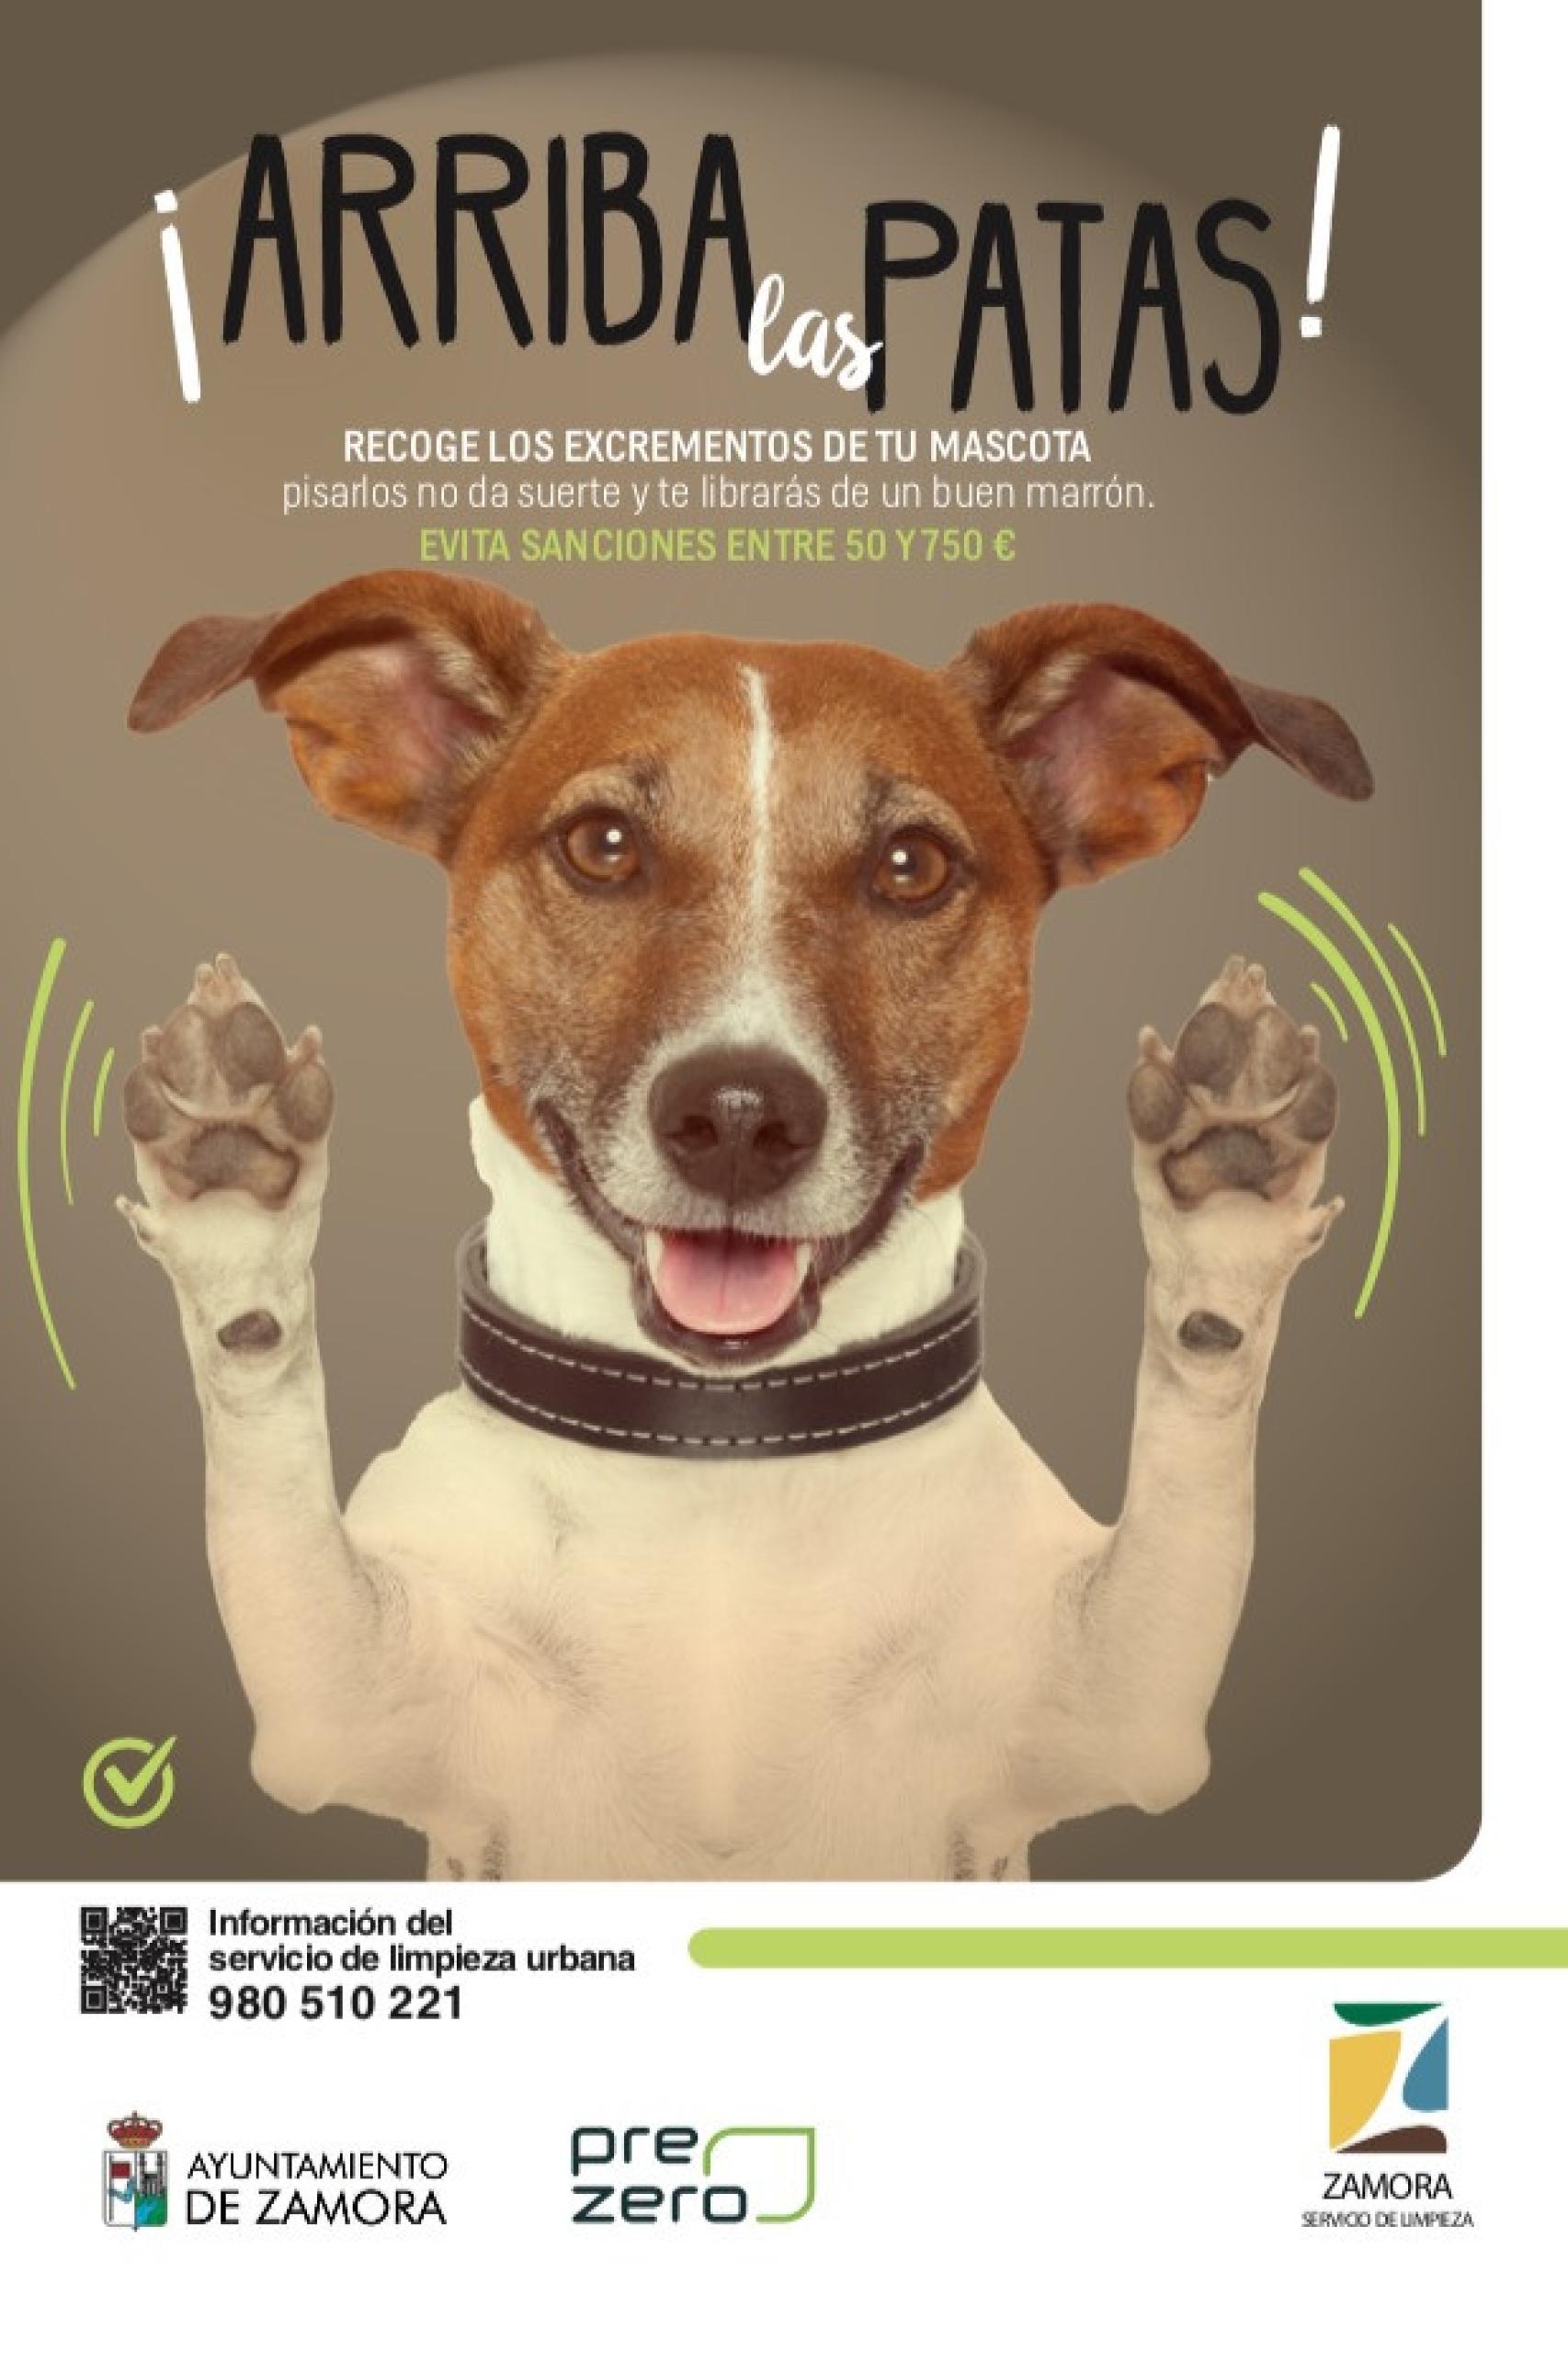 Cartel de la campaña de sensibilización promovida por el Ayuntamiento de Zamora contra los excrementos de los perros